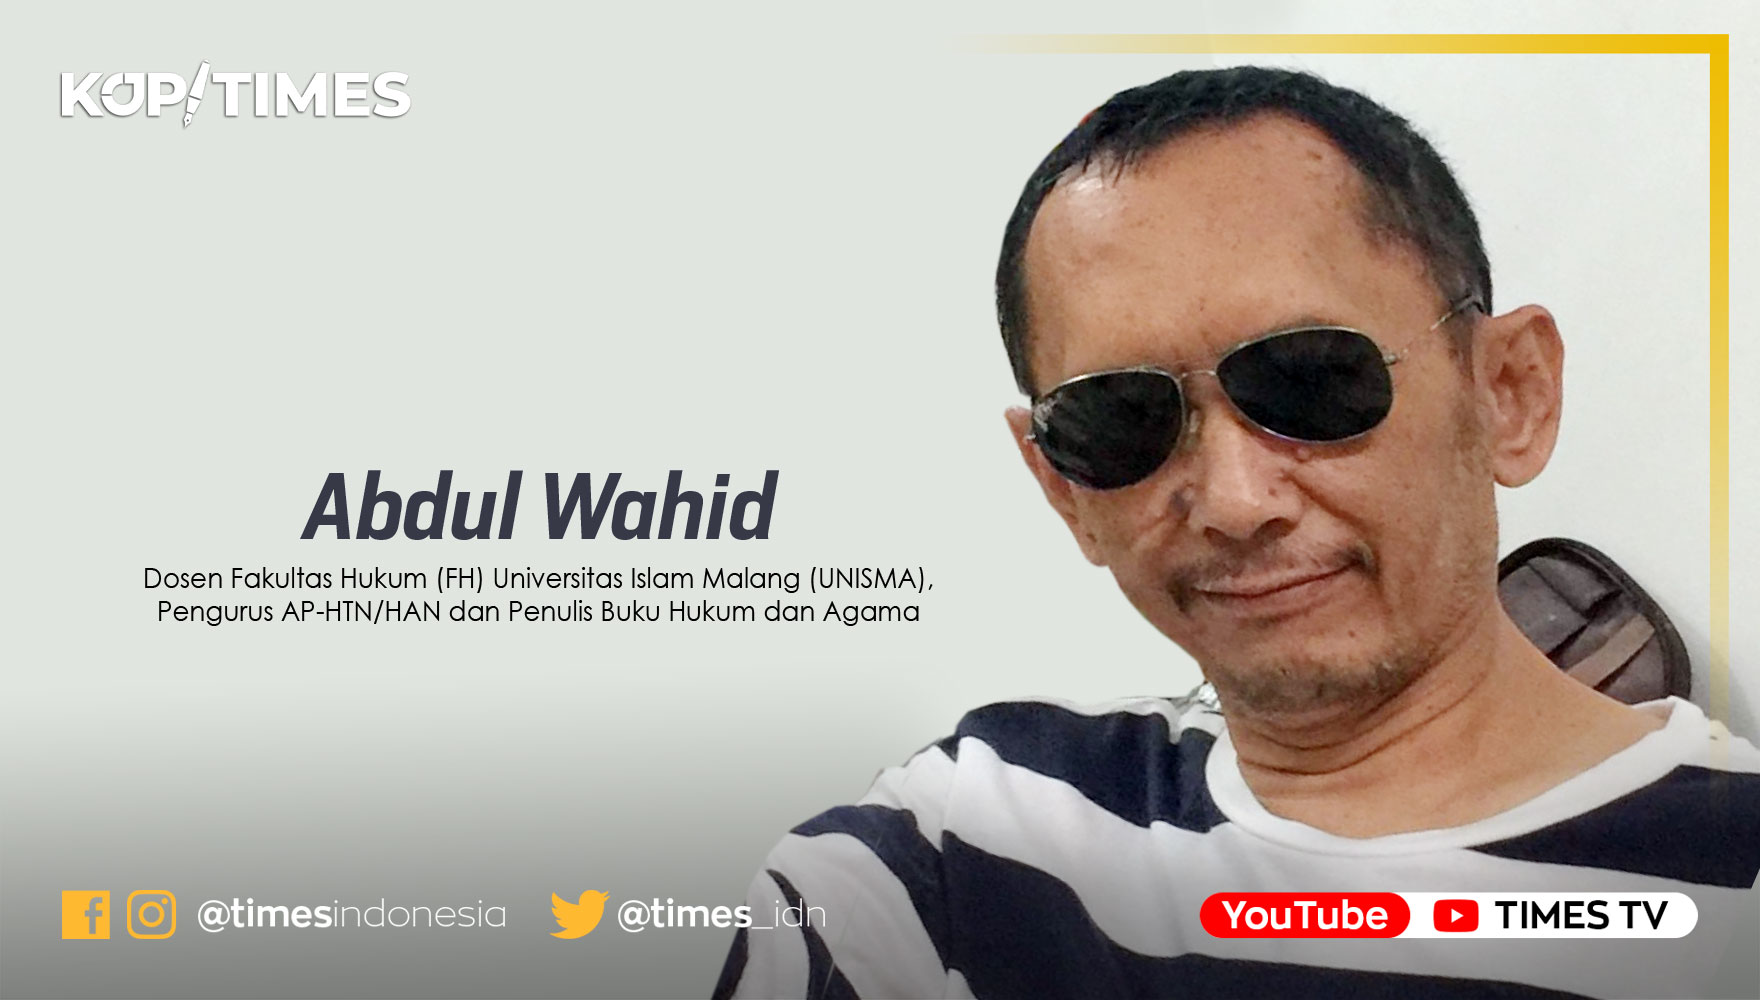 Abdul Wahid, Dosen Fakultas Hukum (FH) Universitas Islam Malang (UNISMA) dan Penulis Buku Hukum dan Agama.